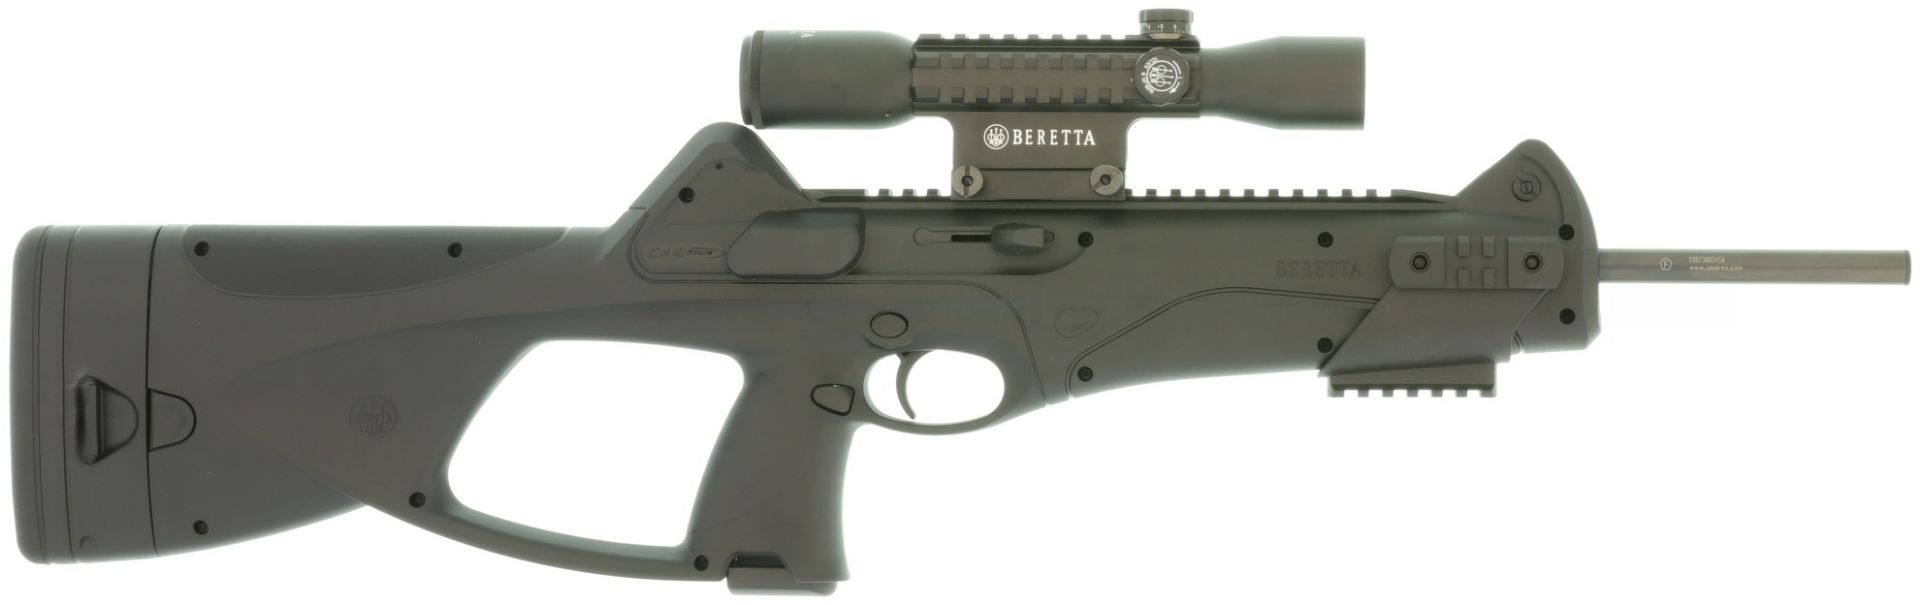 CO2-Gewehr, Umarex, liz. Beretta Cx4 Storm, Kal. 4.5mm